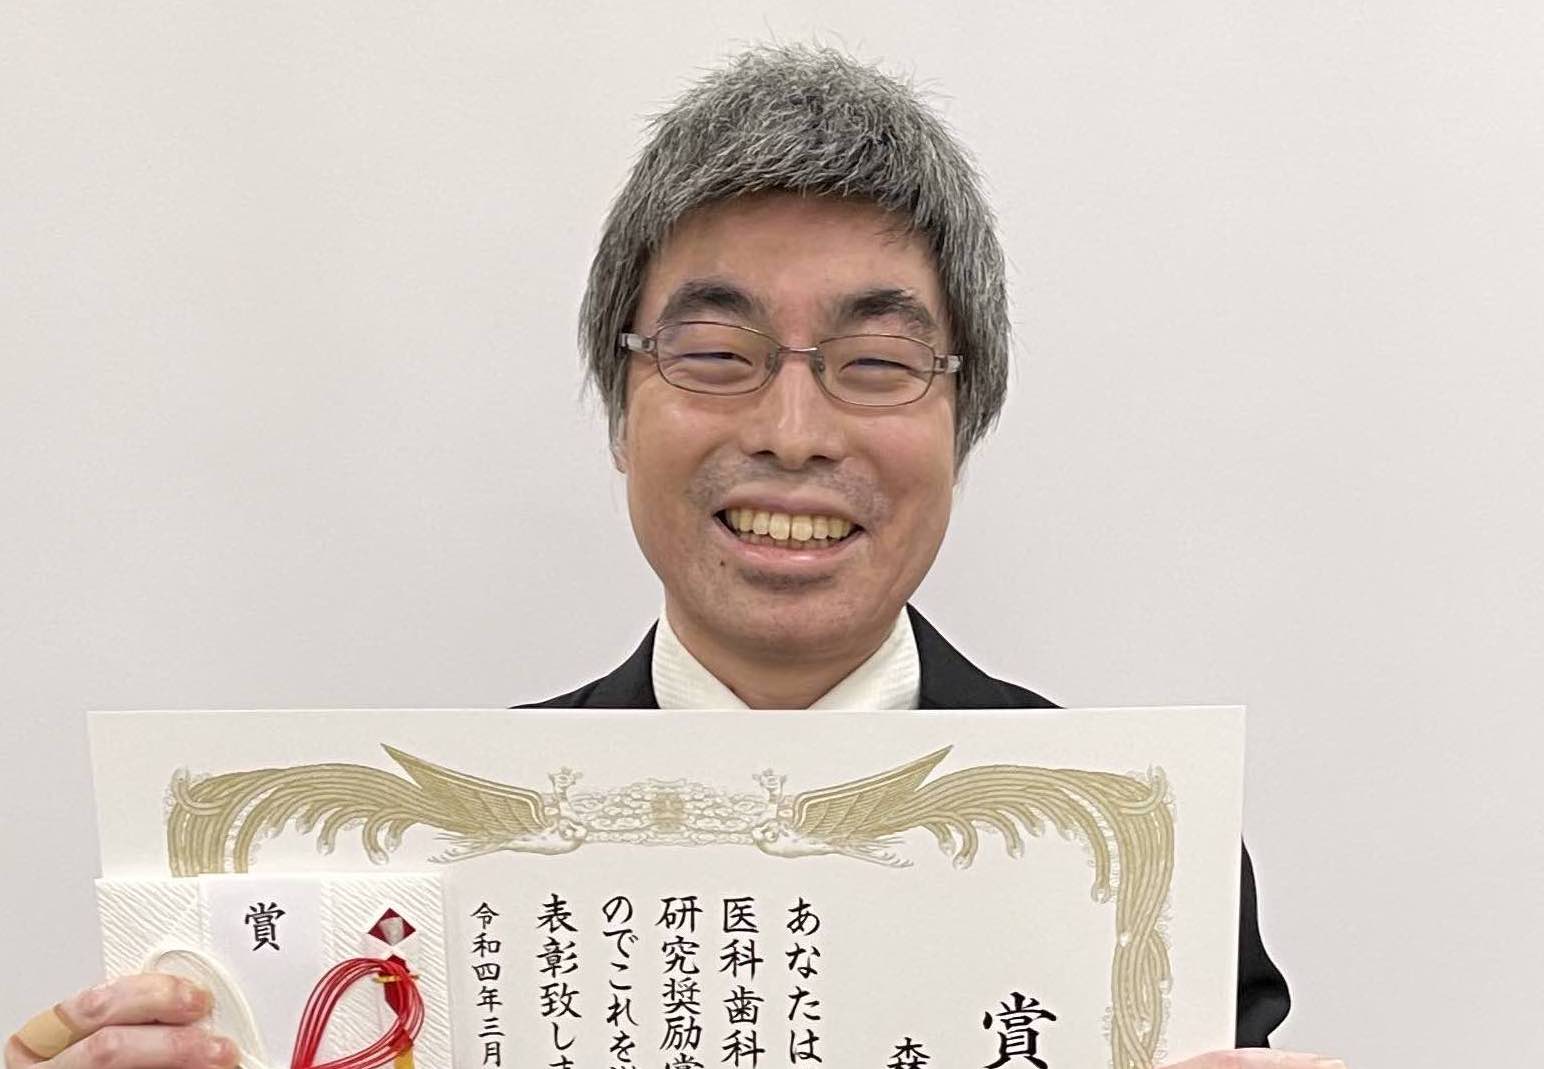 森雄太郎先生 東京医科歯科大学医科同窓会第35回研究奨励賞を受賞